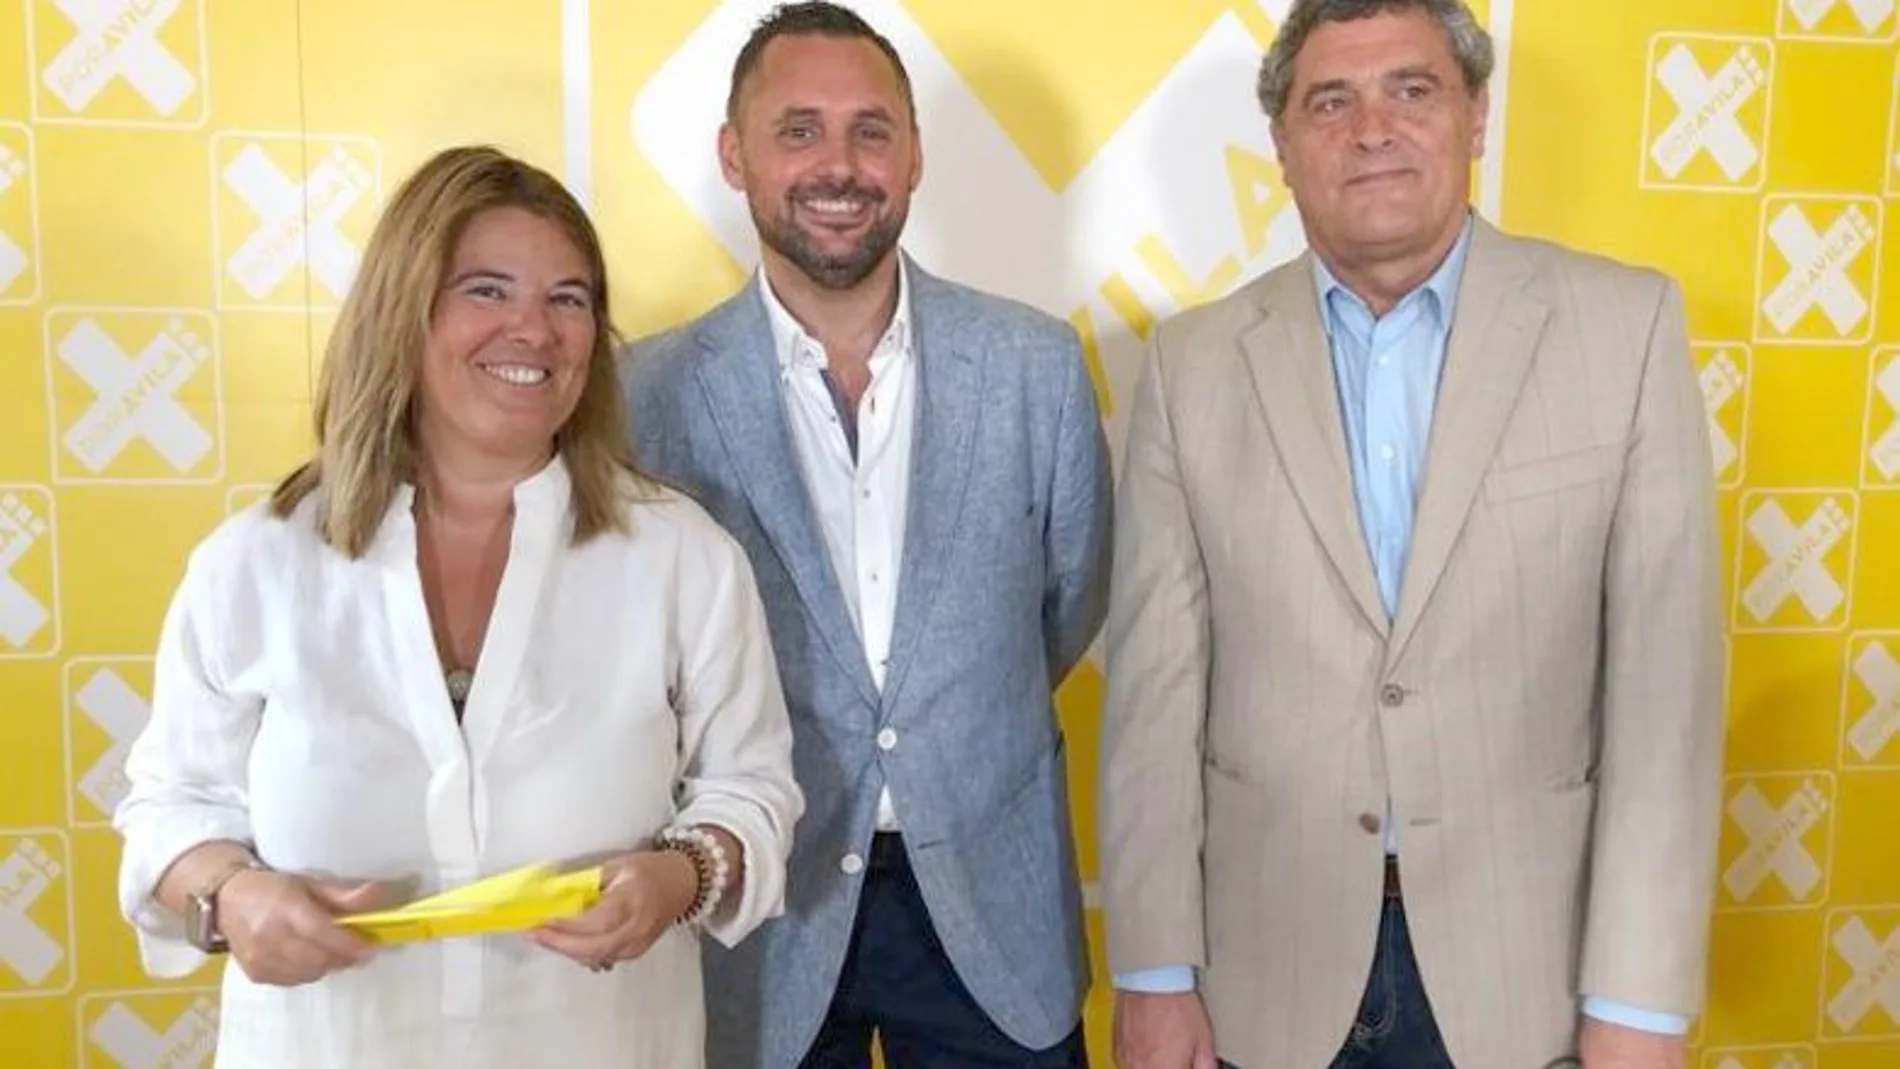 Por Ávila presenta su programa electoral para trabajar en la cohesión y desarrollo de la provincia. De izquierda a derecha, Ruth Pindado, José Ramón Budiño y Pedro Pascual